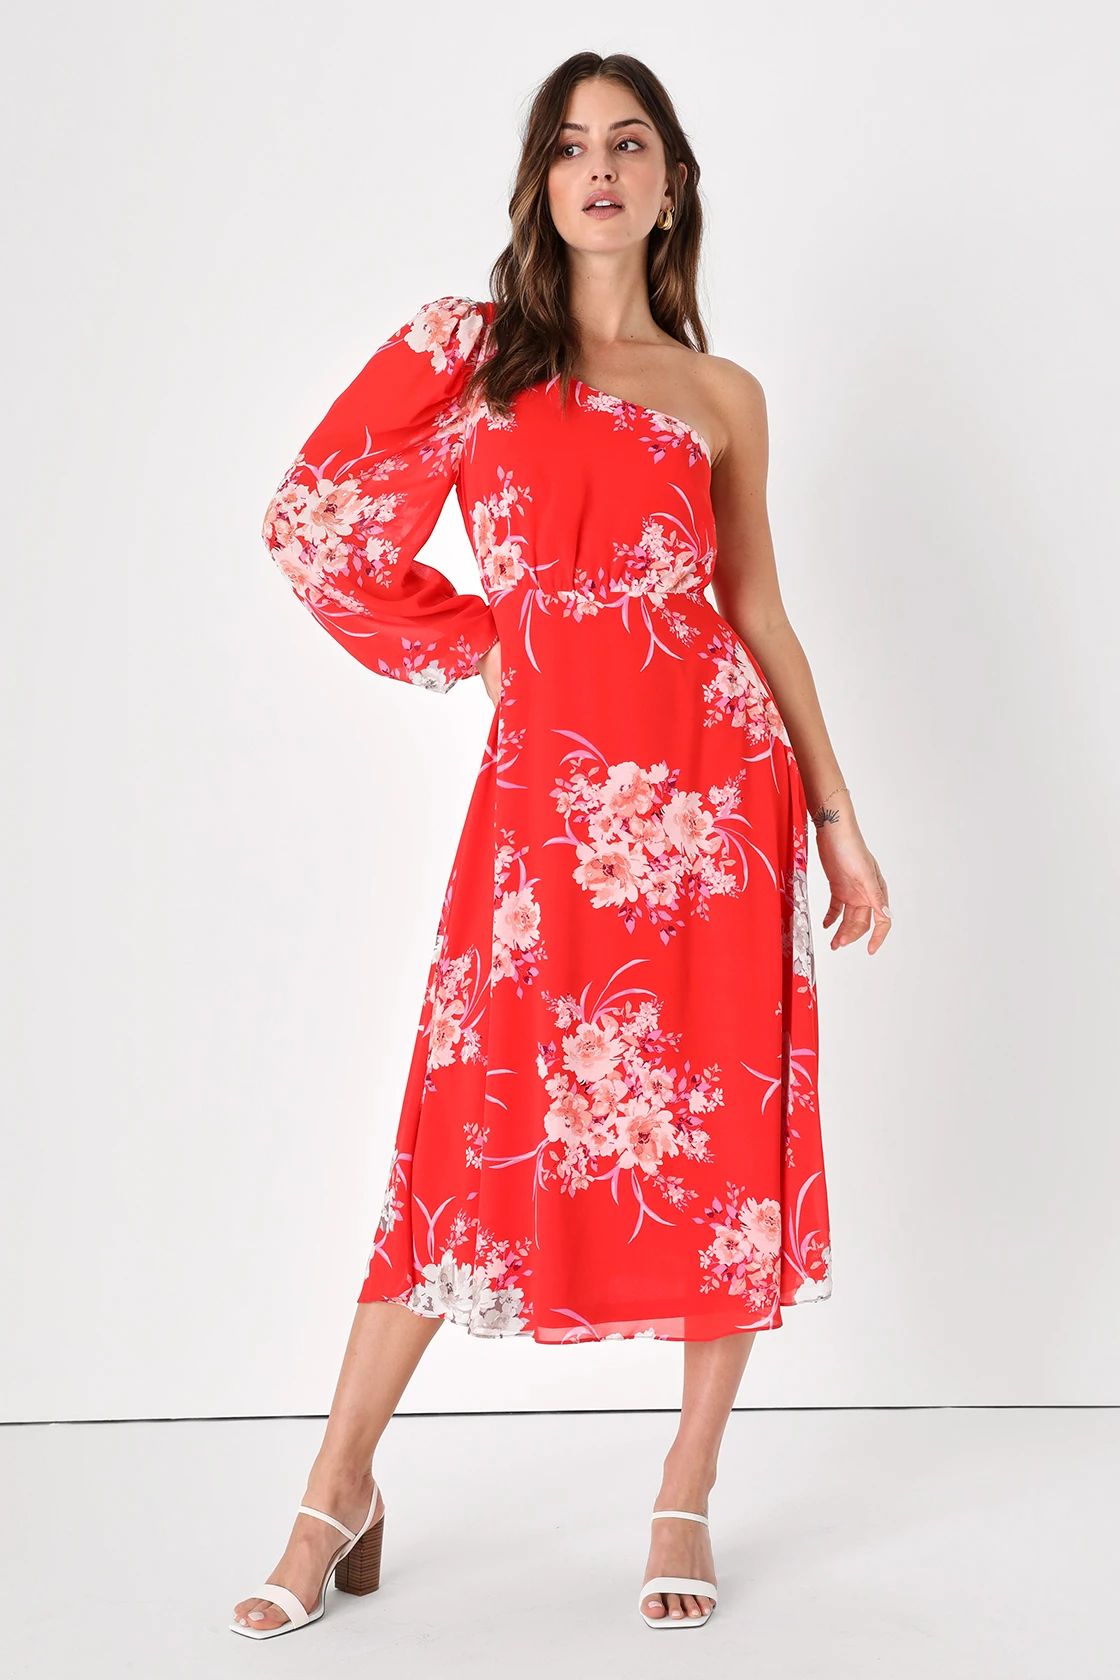 Brunch Besties Red Floral Print One-Shoulder Midi Dress | Lulus (US)